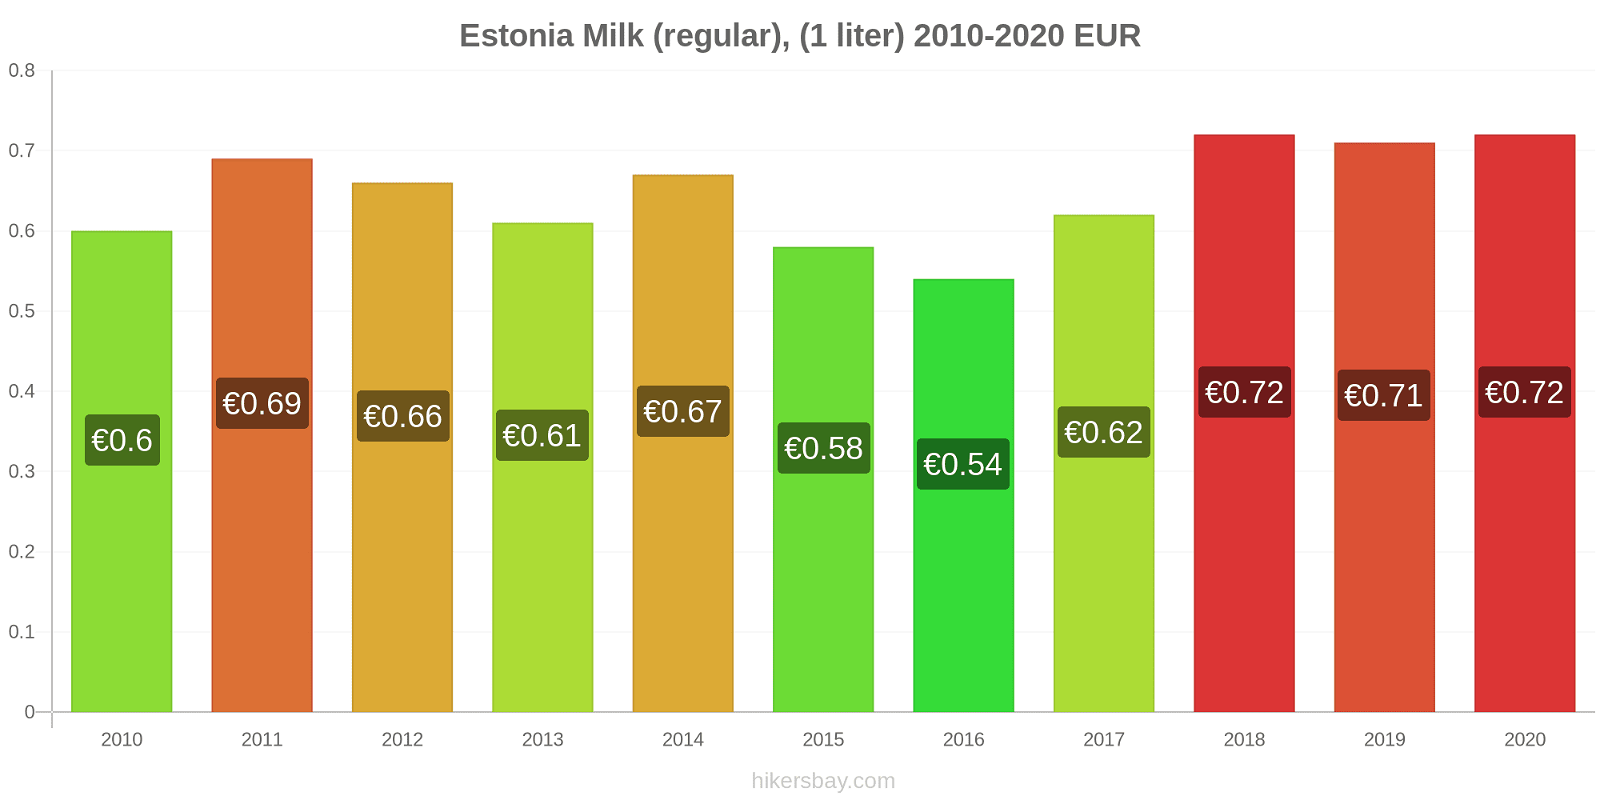 Estonia price changes Milk (regular), (1 liter) hikersbay.com